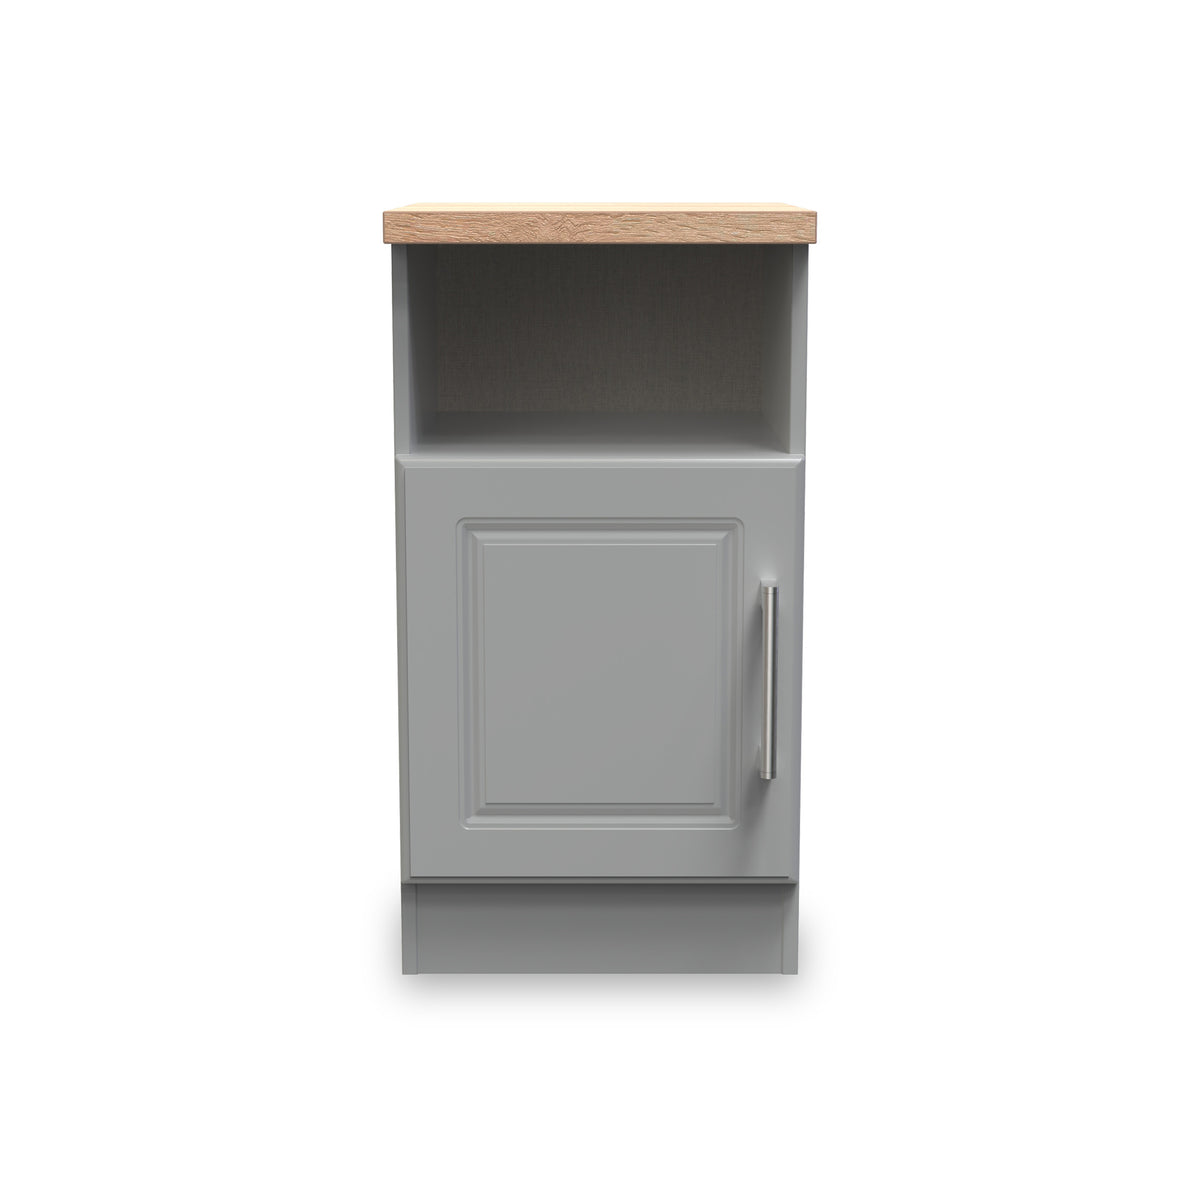 Talland Grey 1 Door Bedside Cabinet with Oak Top